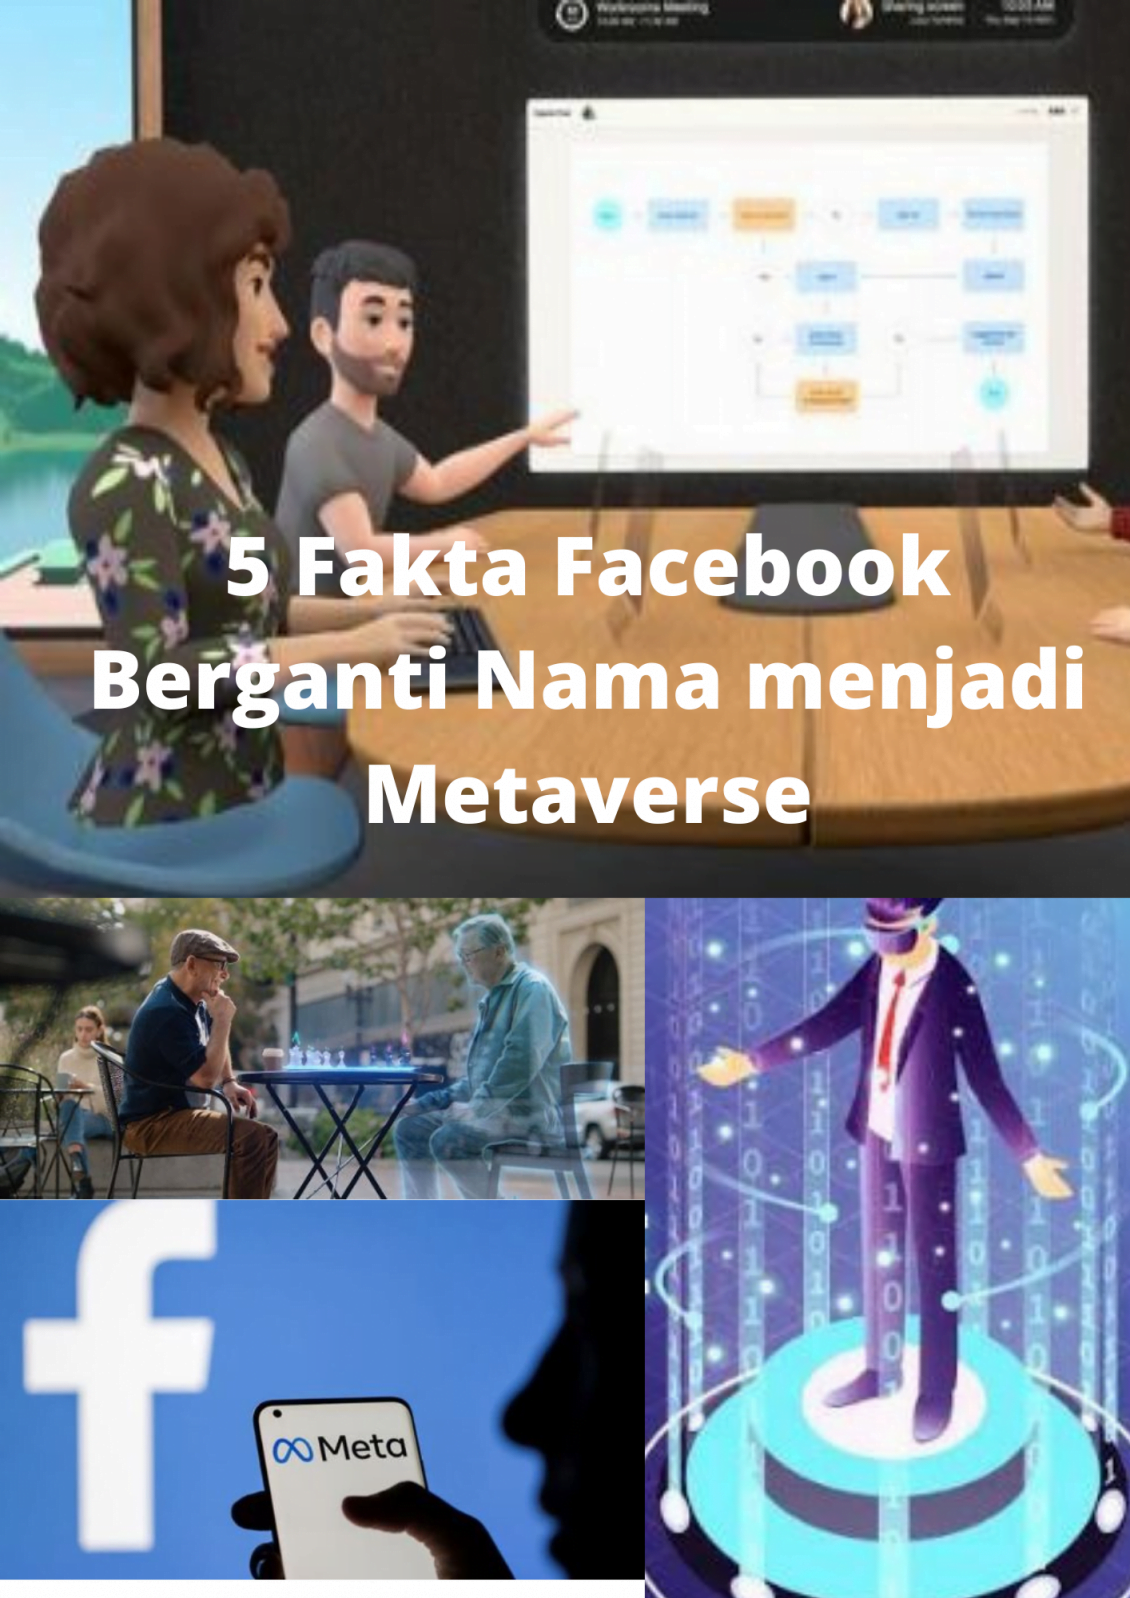 5 Fakta Facebook Berganti Nama menjadi Metavers